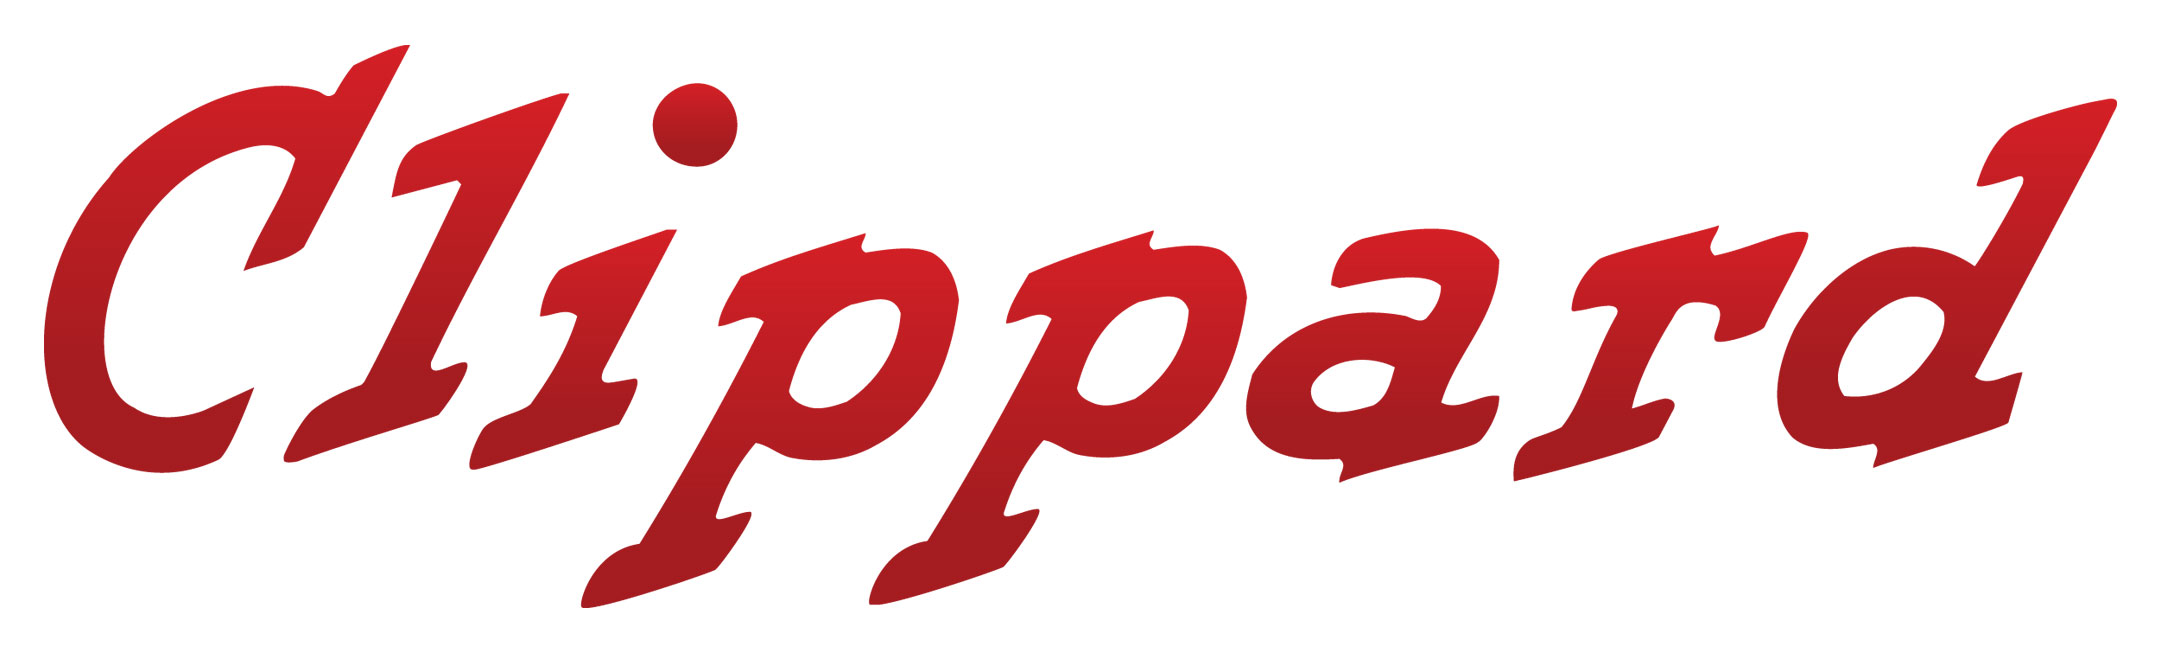 CLIPPARD Logo